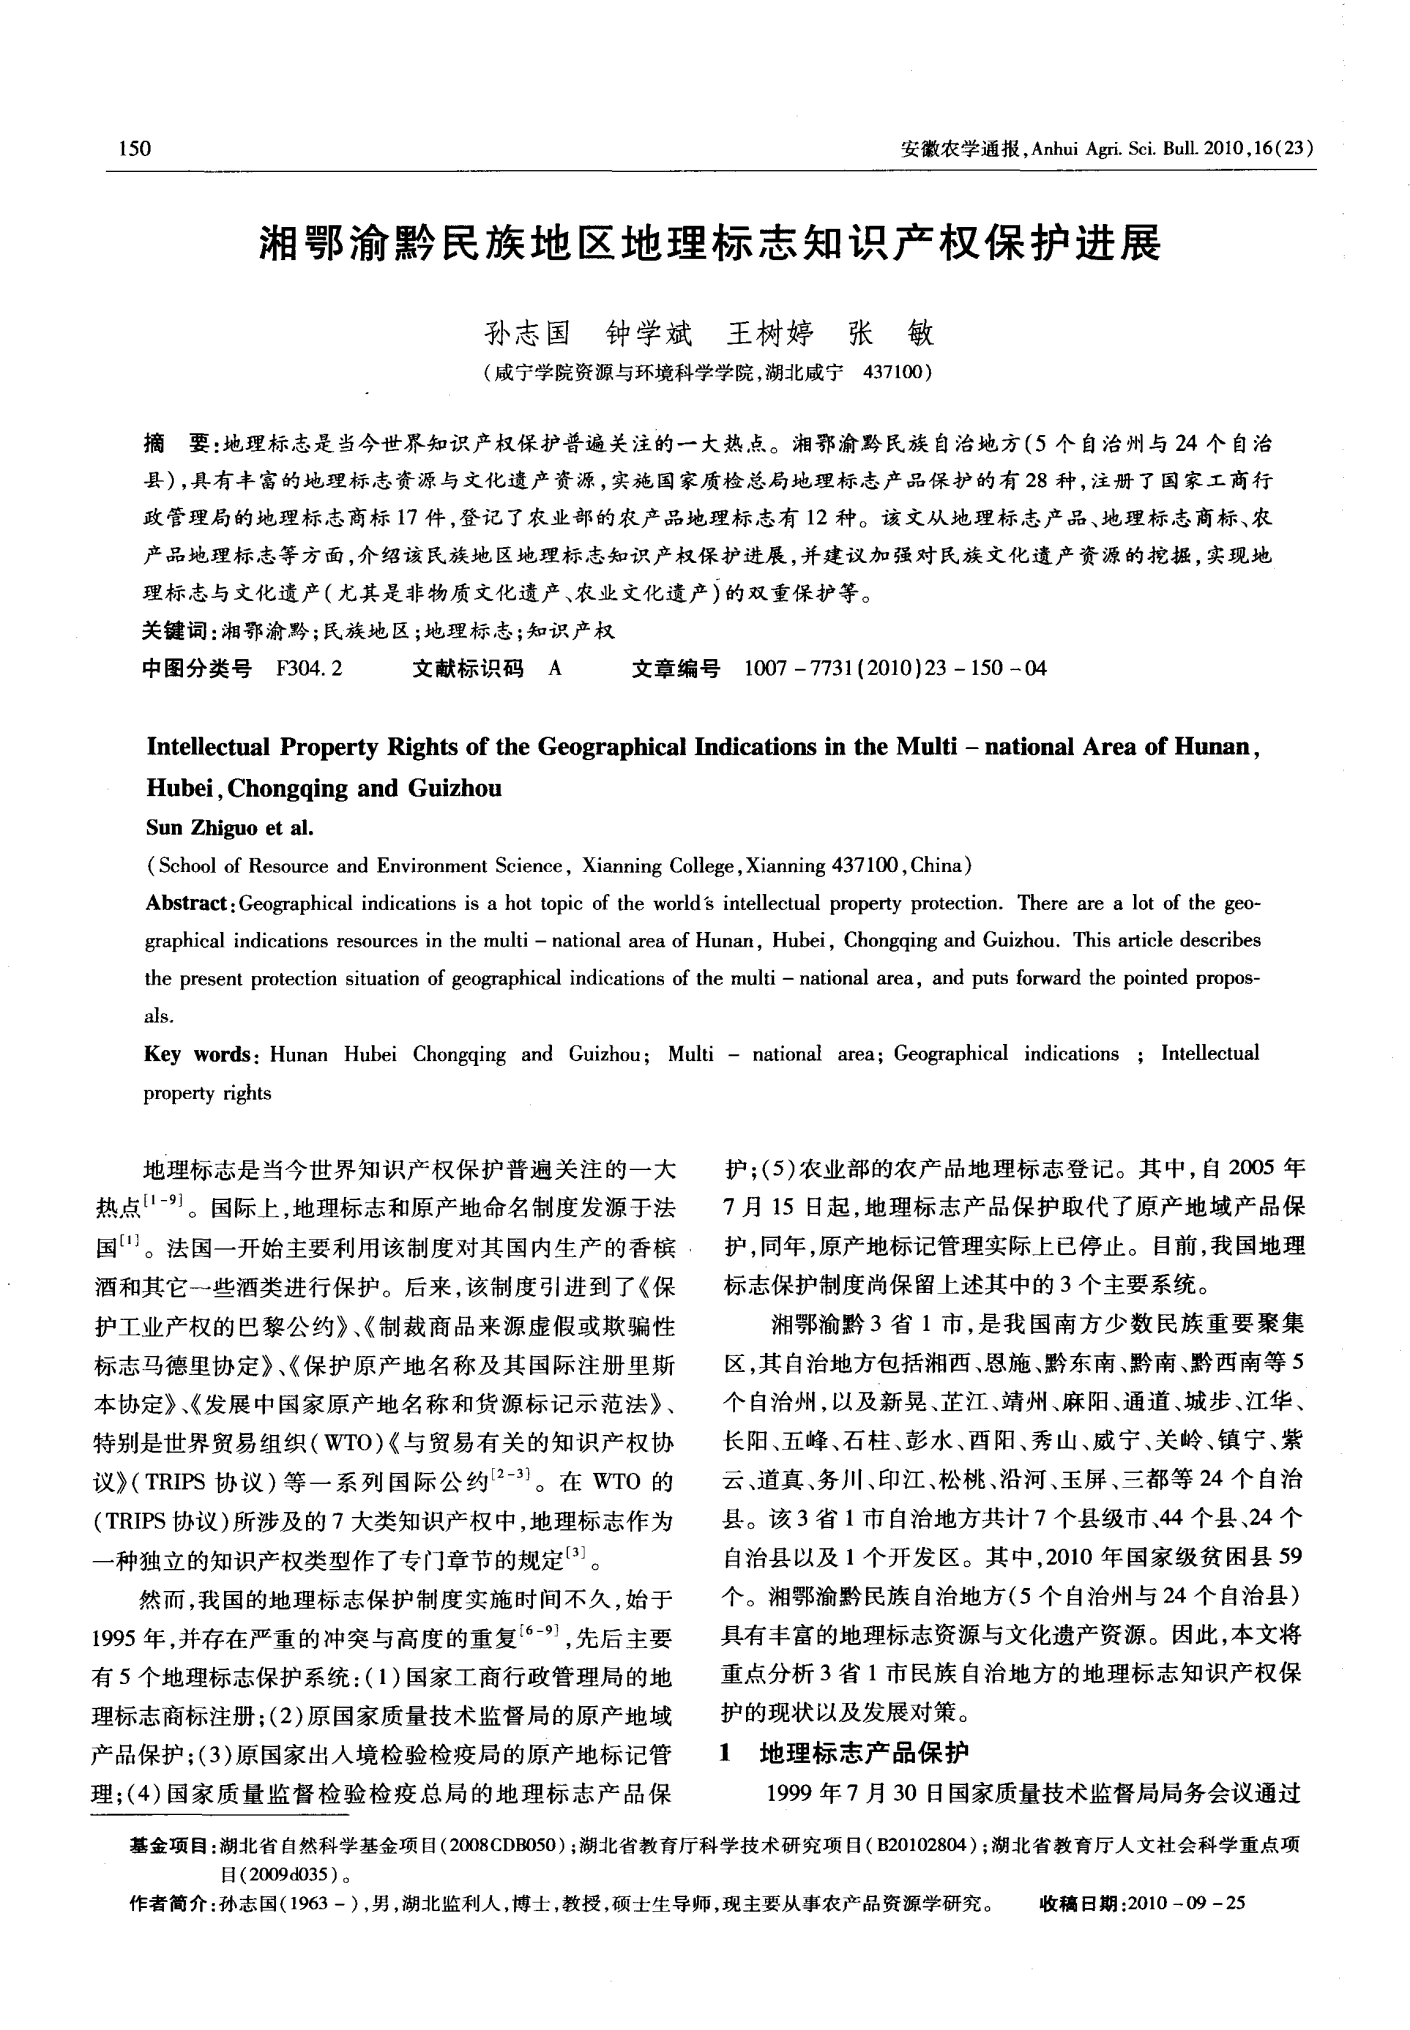 湘鄂渝黔民族地区地理标志知识产权保护进展